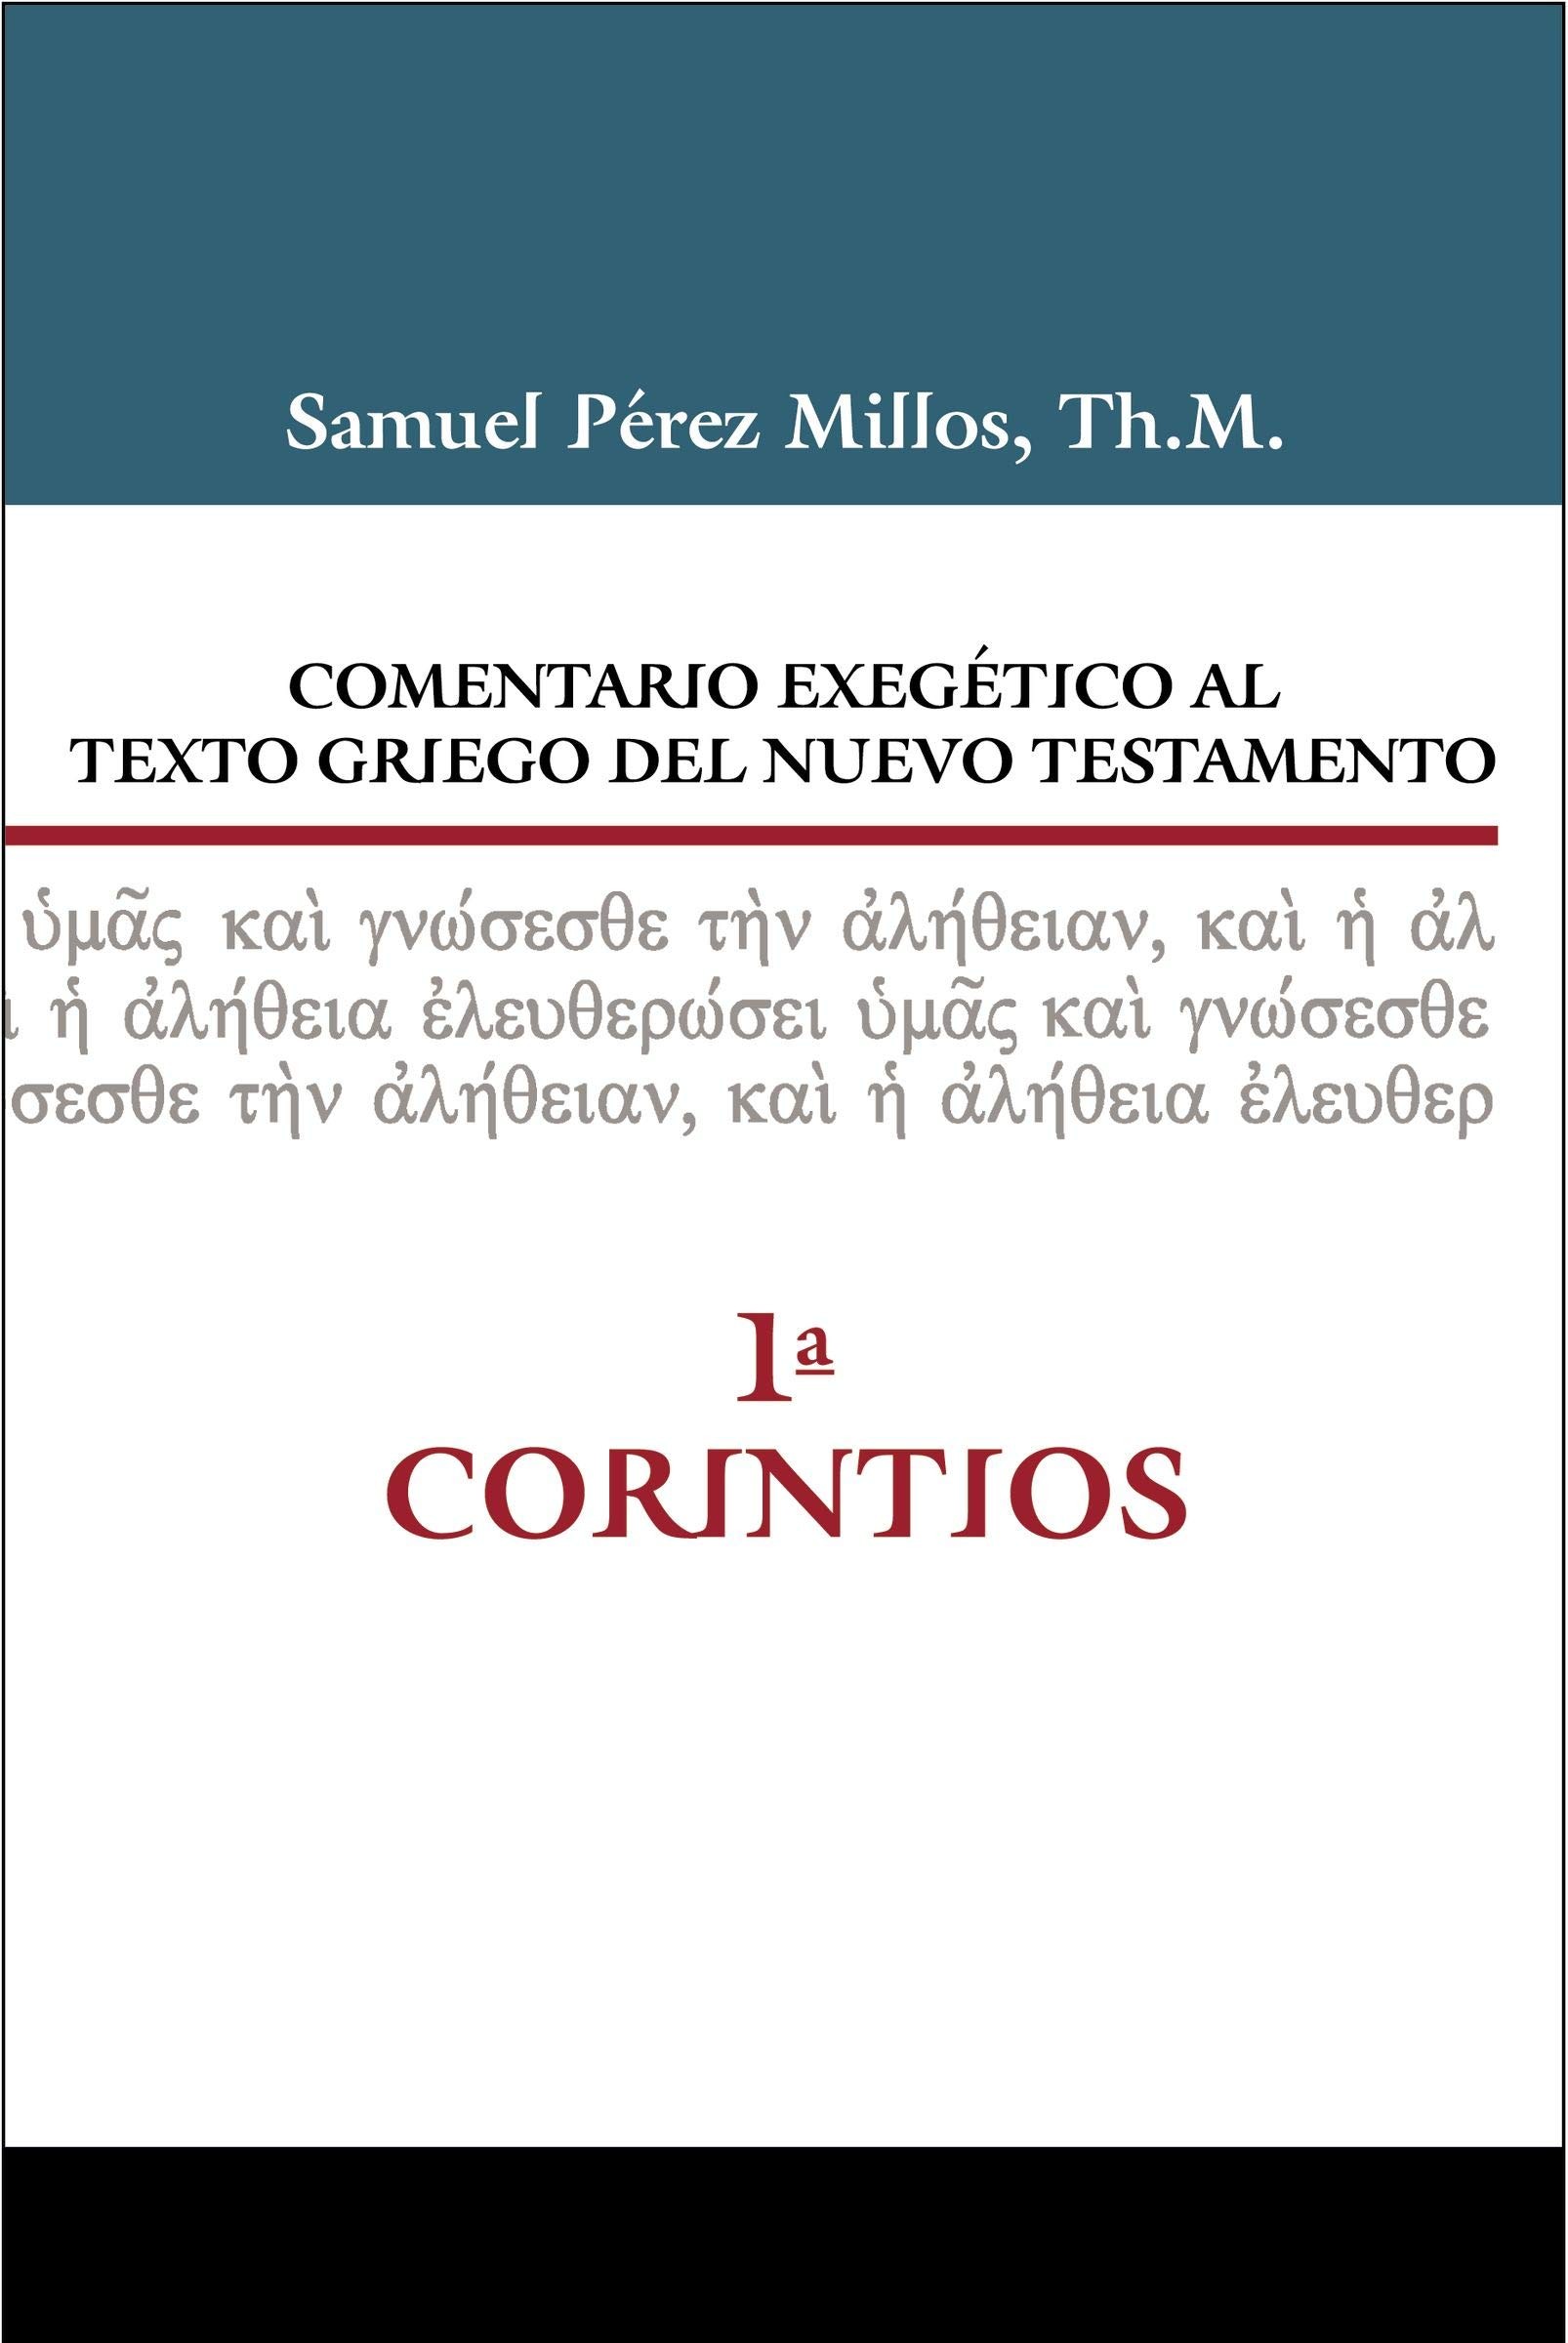 Comentario exegético al texto griego del N. T. - 1 Corintios